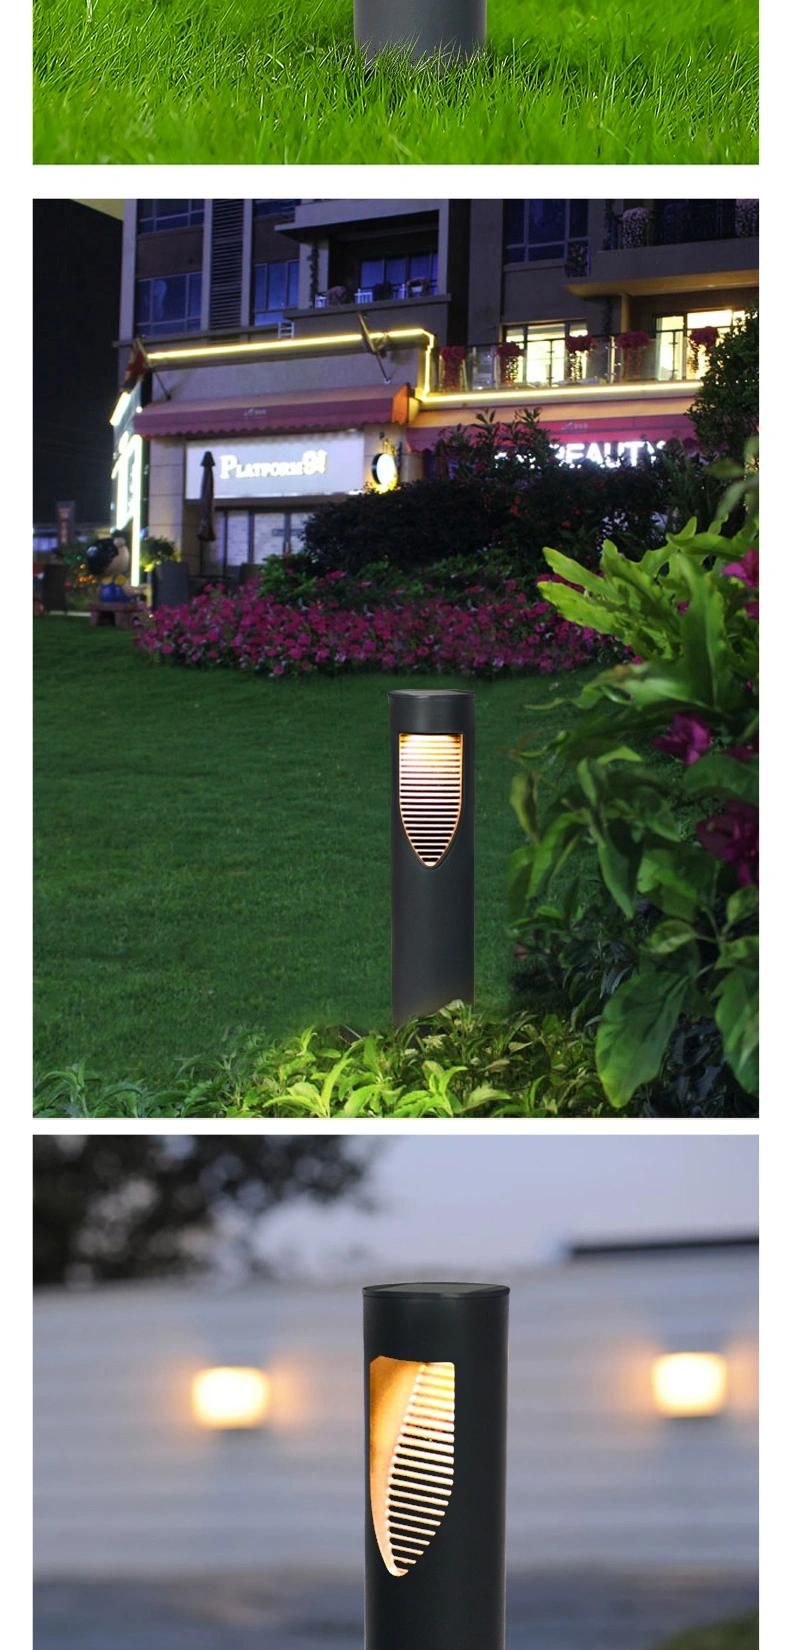 Modern Simplicity Solar Waterproof LED Garden Lawn Light for Courtyard Villa Landscape Lawn